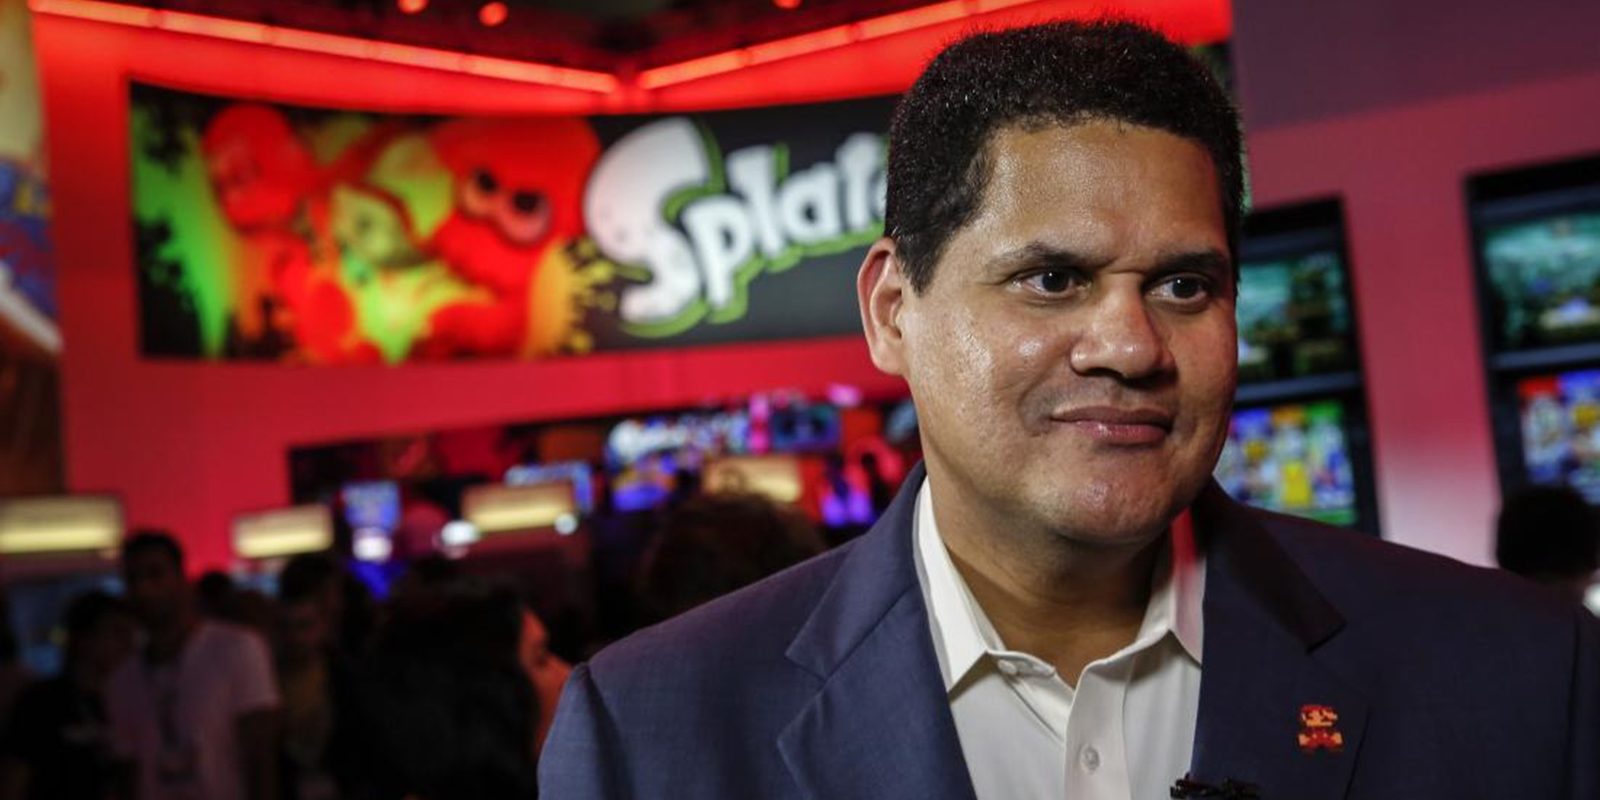 Reggie espera que la transición de Wii U a Nintendo NX sea efectiva